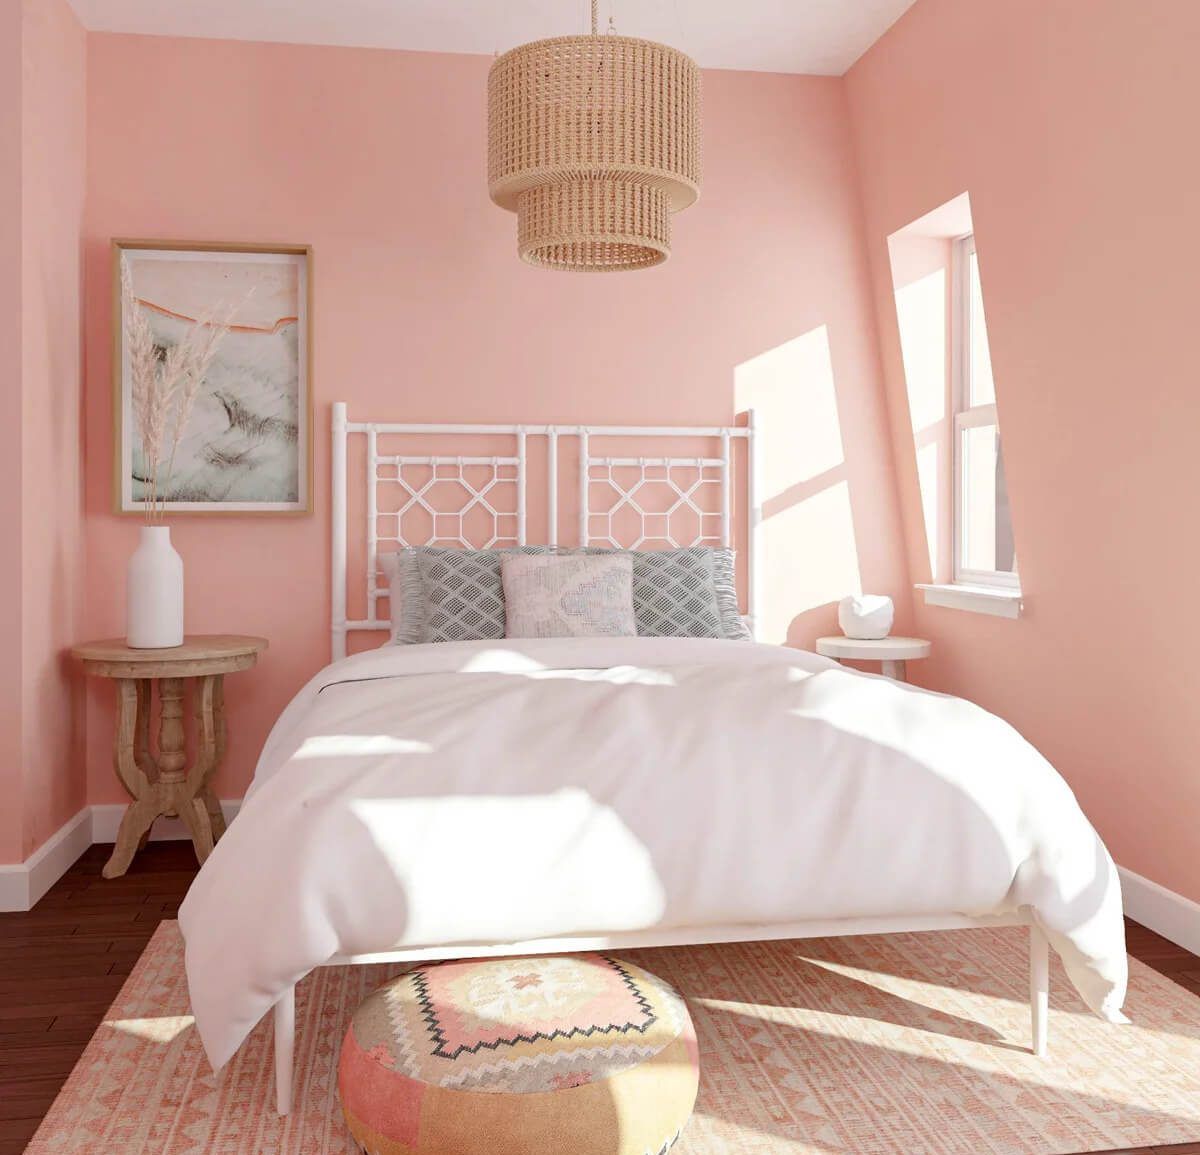 Tông màu hồng đem đến sự tươi sáng và lãng mạn, tạo nên không gian phòng ngủ ngọt ngào và đẹp mắt.